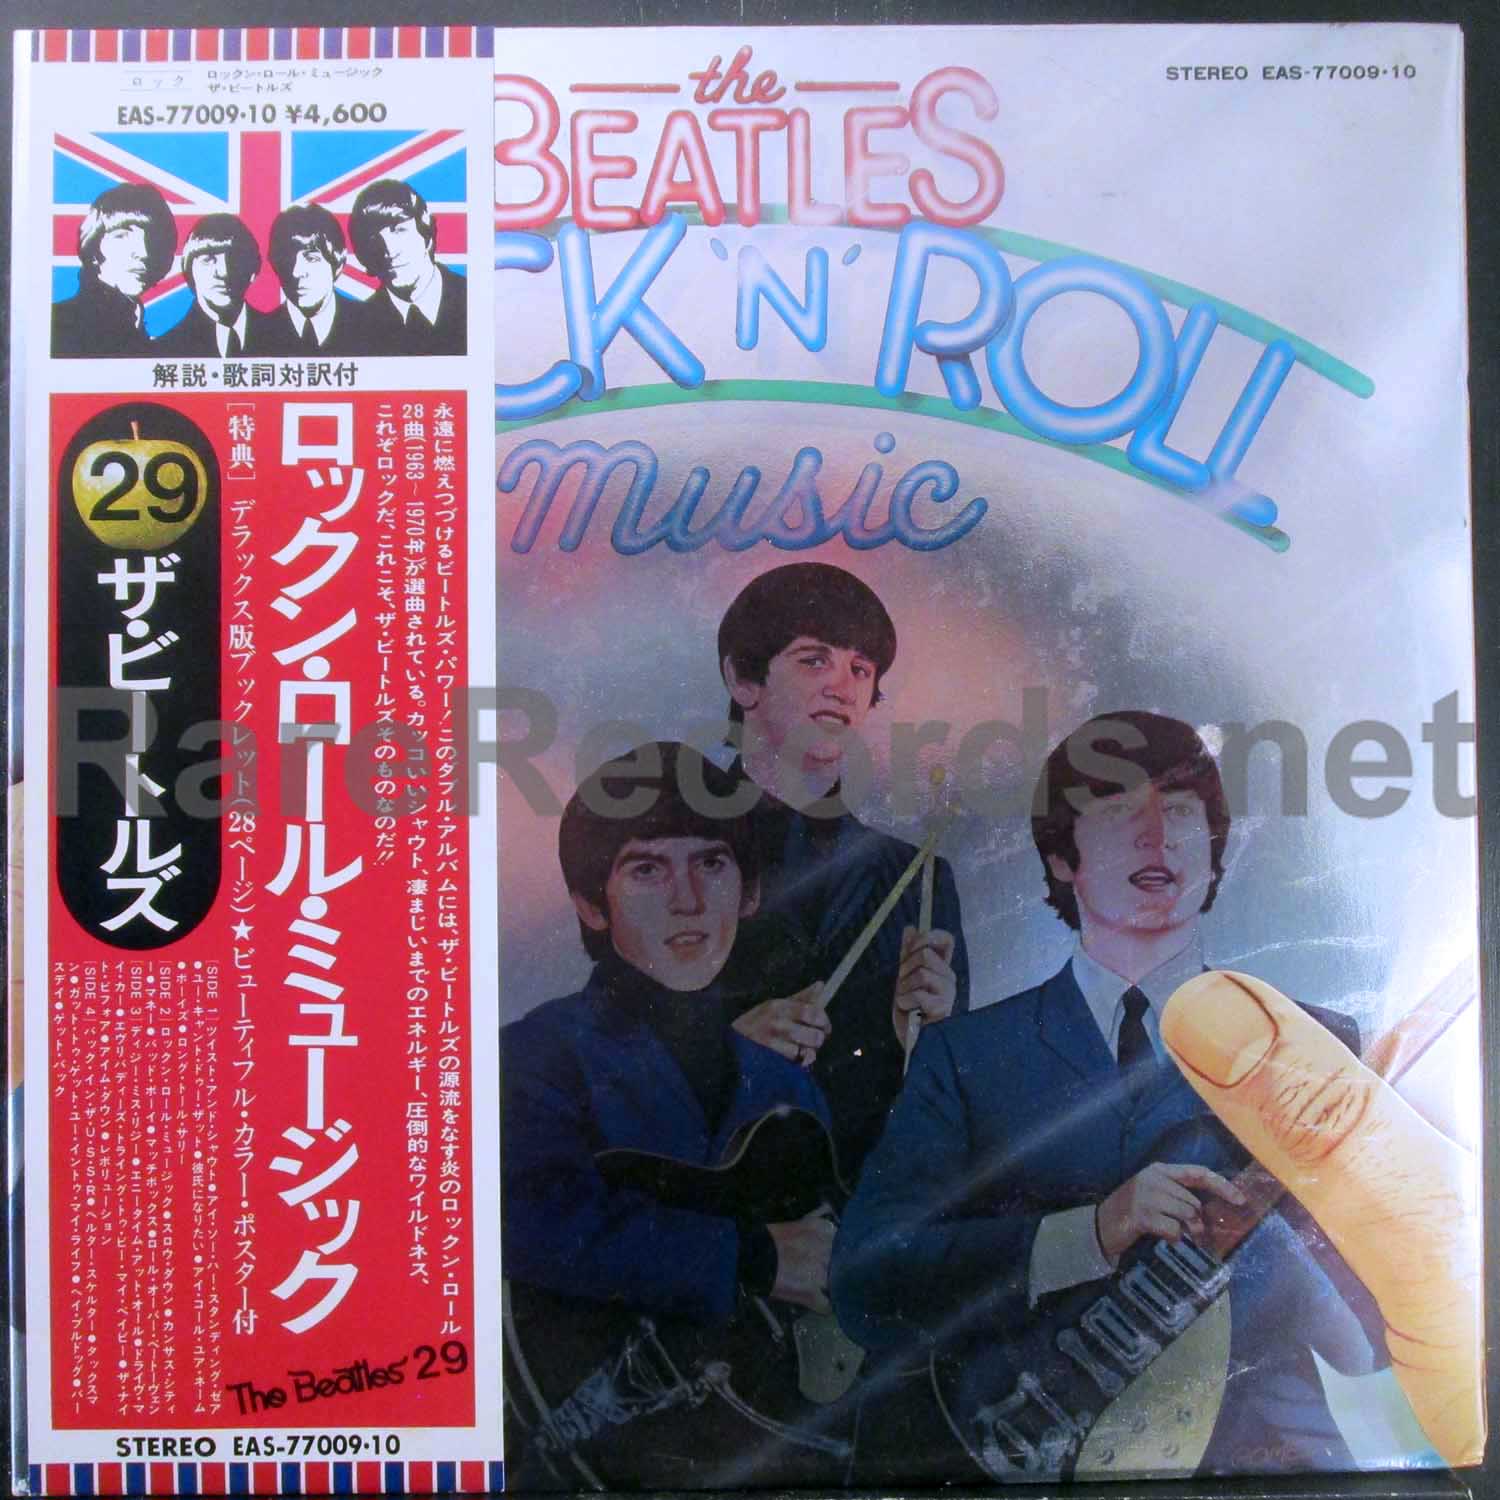 beatles - rock 'n' roll music japan lp